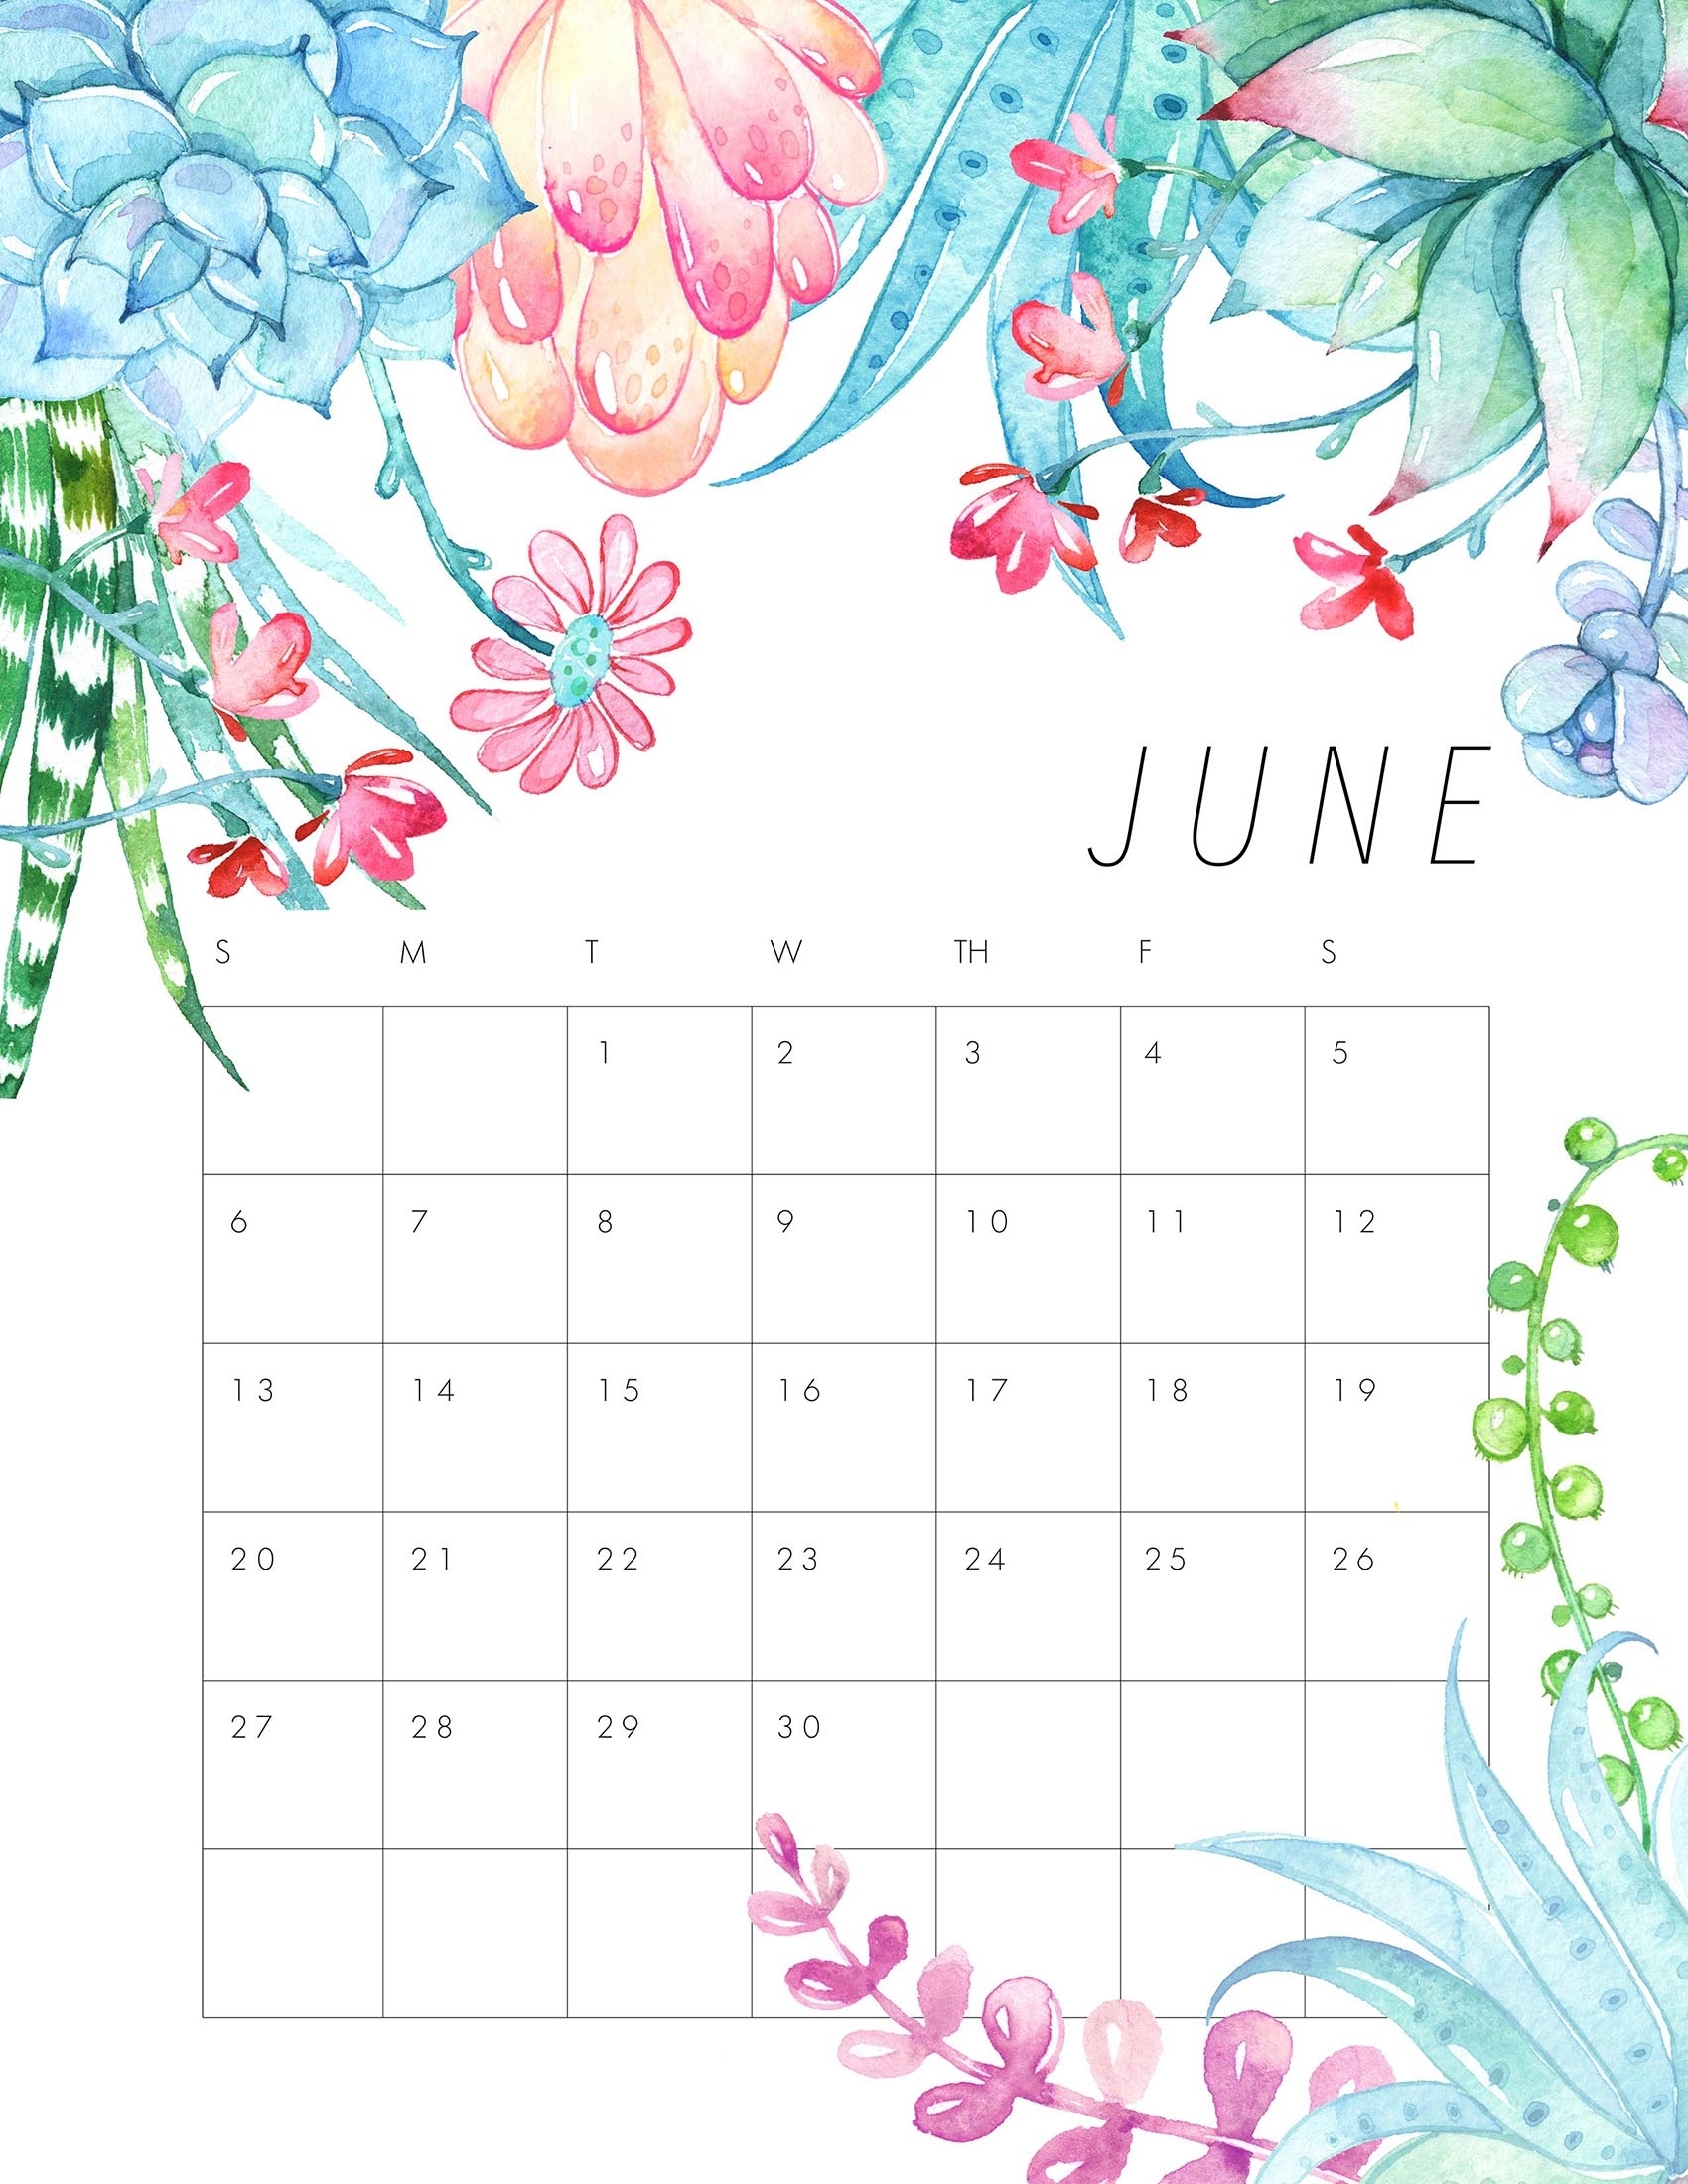 Free Printable 2021 Floral Calendar - The Cottage Market